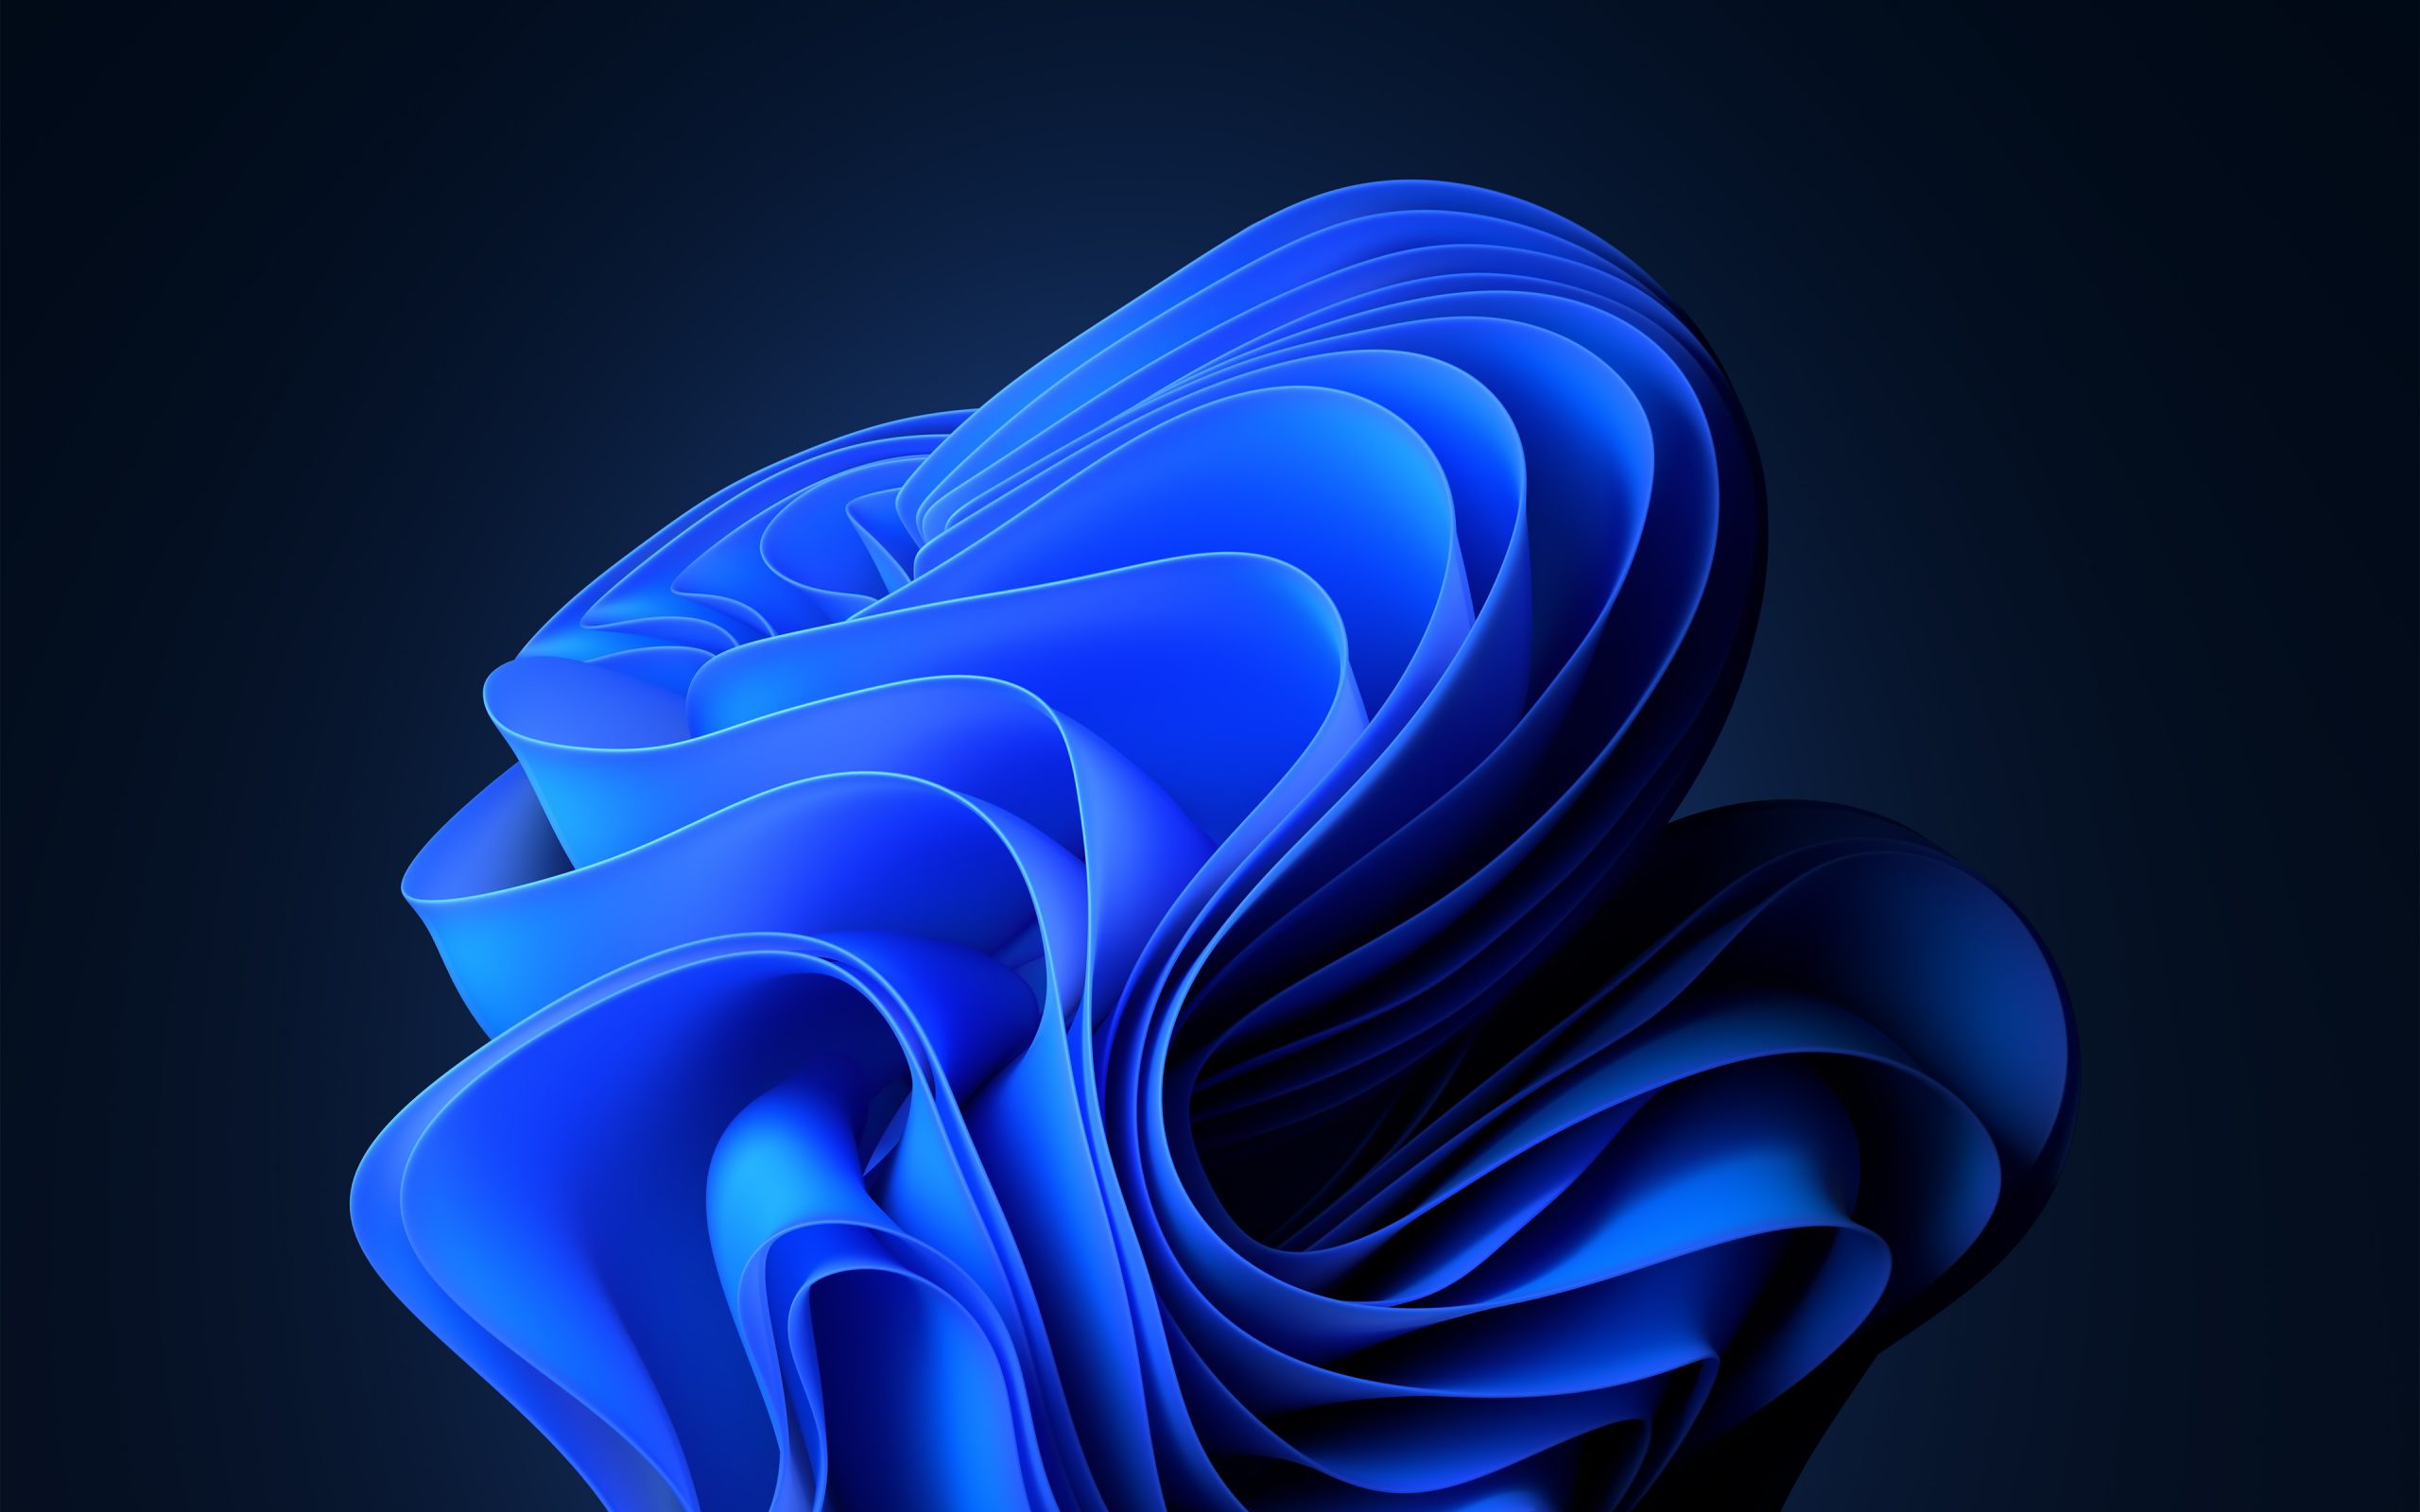 Tương tác ngay với hình nền Flow Windows 11 đẹp như tranh vẽ, giúp bạn trang trí máy tính đúng theo sở thích của mình. Sự tương phản mạnh mẽ của màu sắc và hình ảnh sắc nét giúp tạo nên không gian công việc thú vị và cuốn hút.